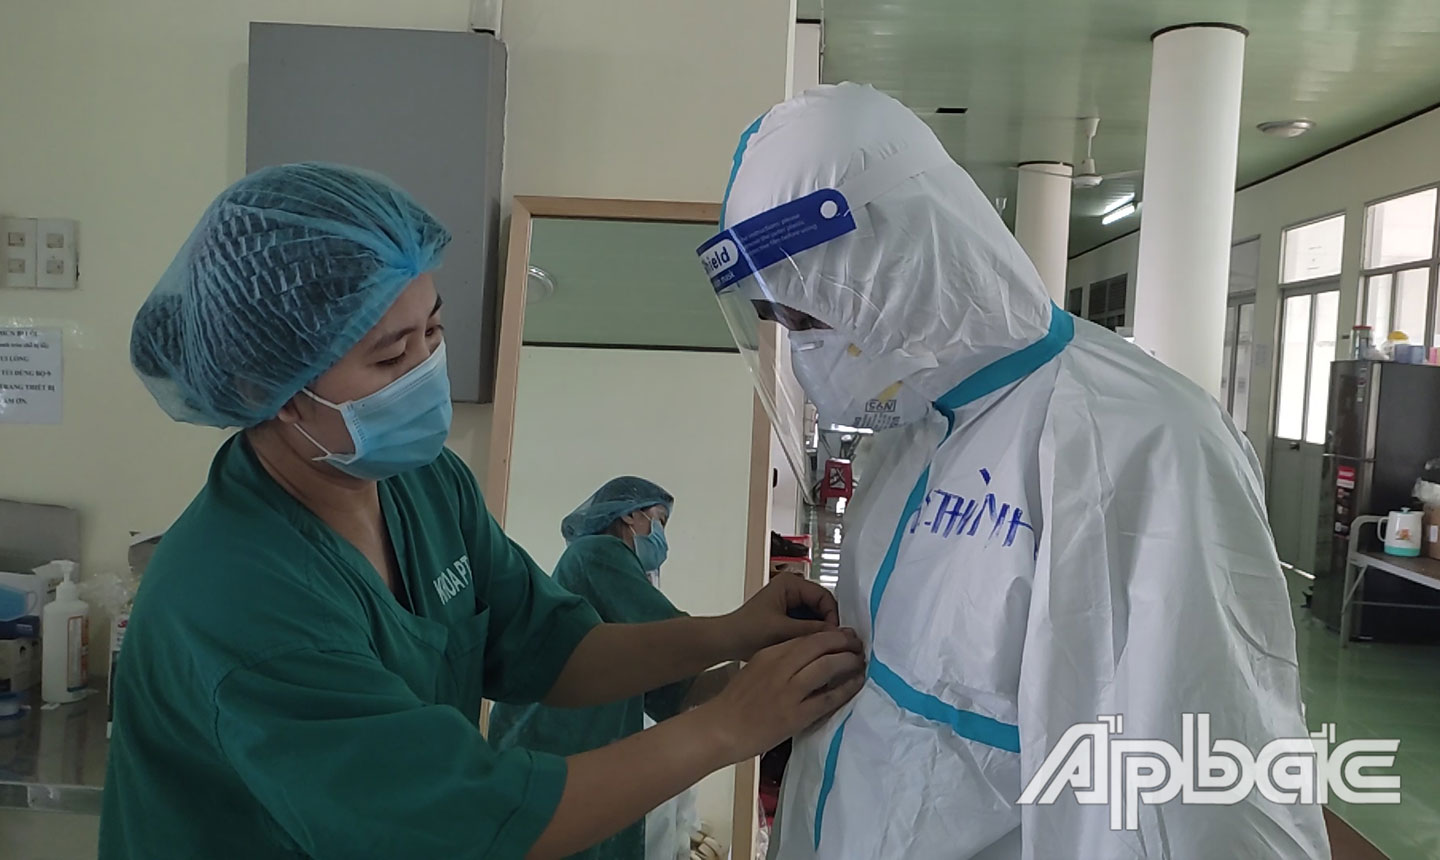 Nhân viên y tế kiểm tra phương tiện phòng hộ cá nhân của phóng viên trước khi vào Trung tâm Hồi sức bệnh nhân Covid-19 tỉnh tác nghiệp.